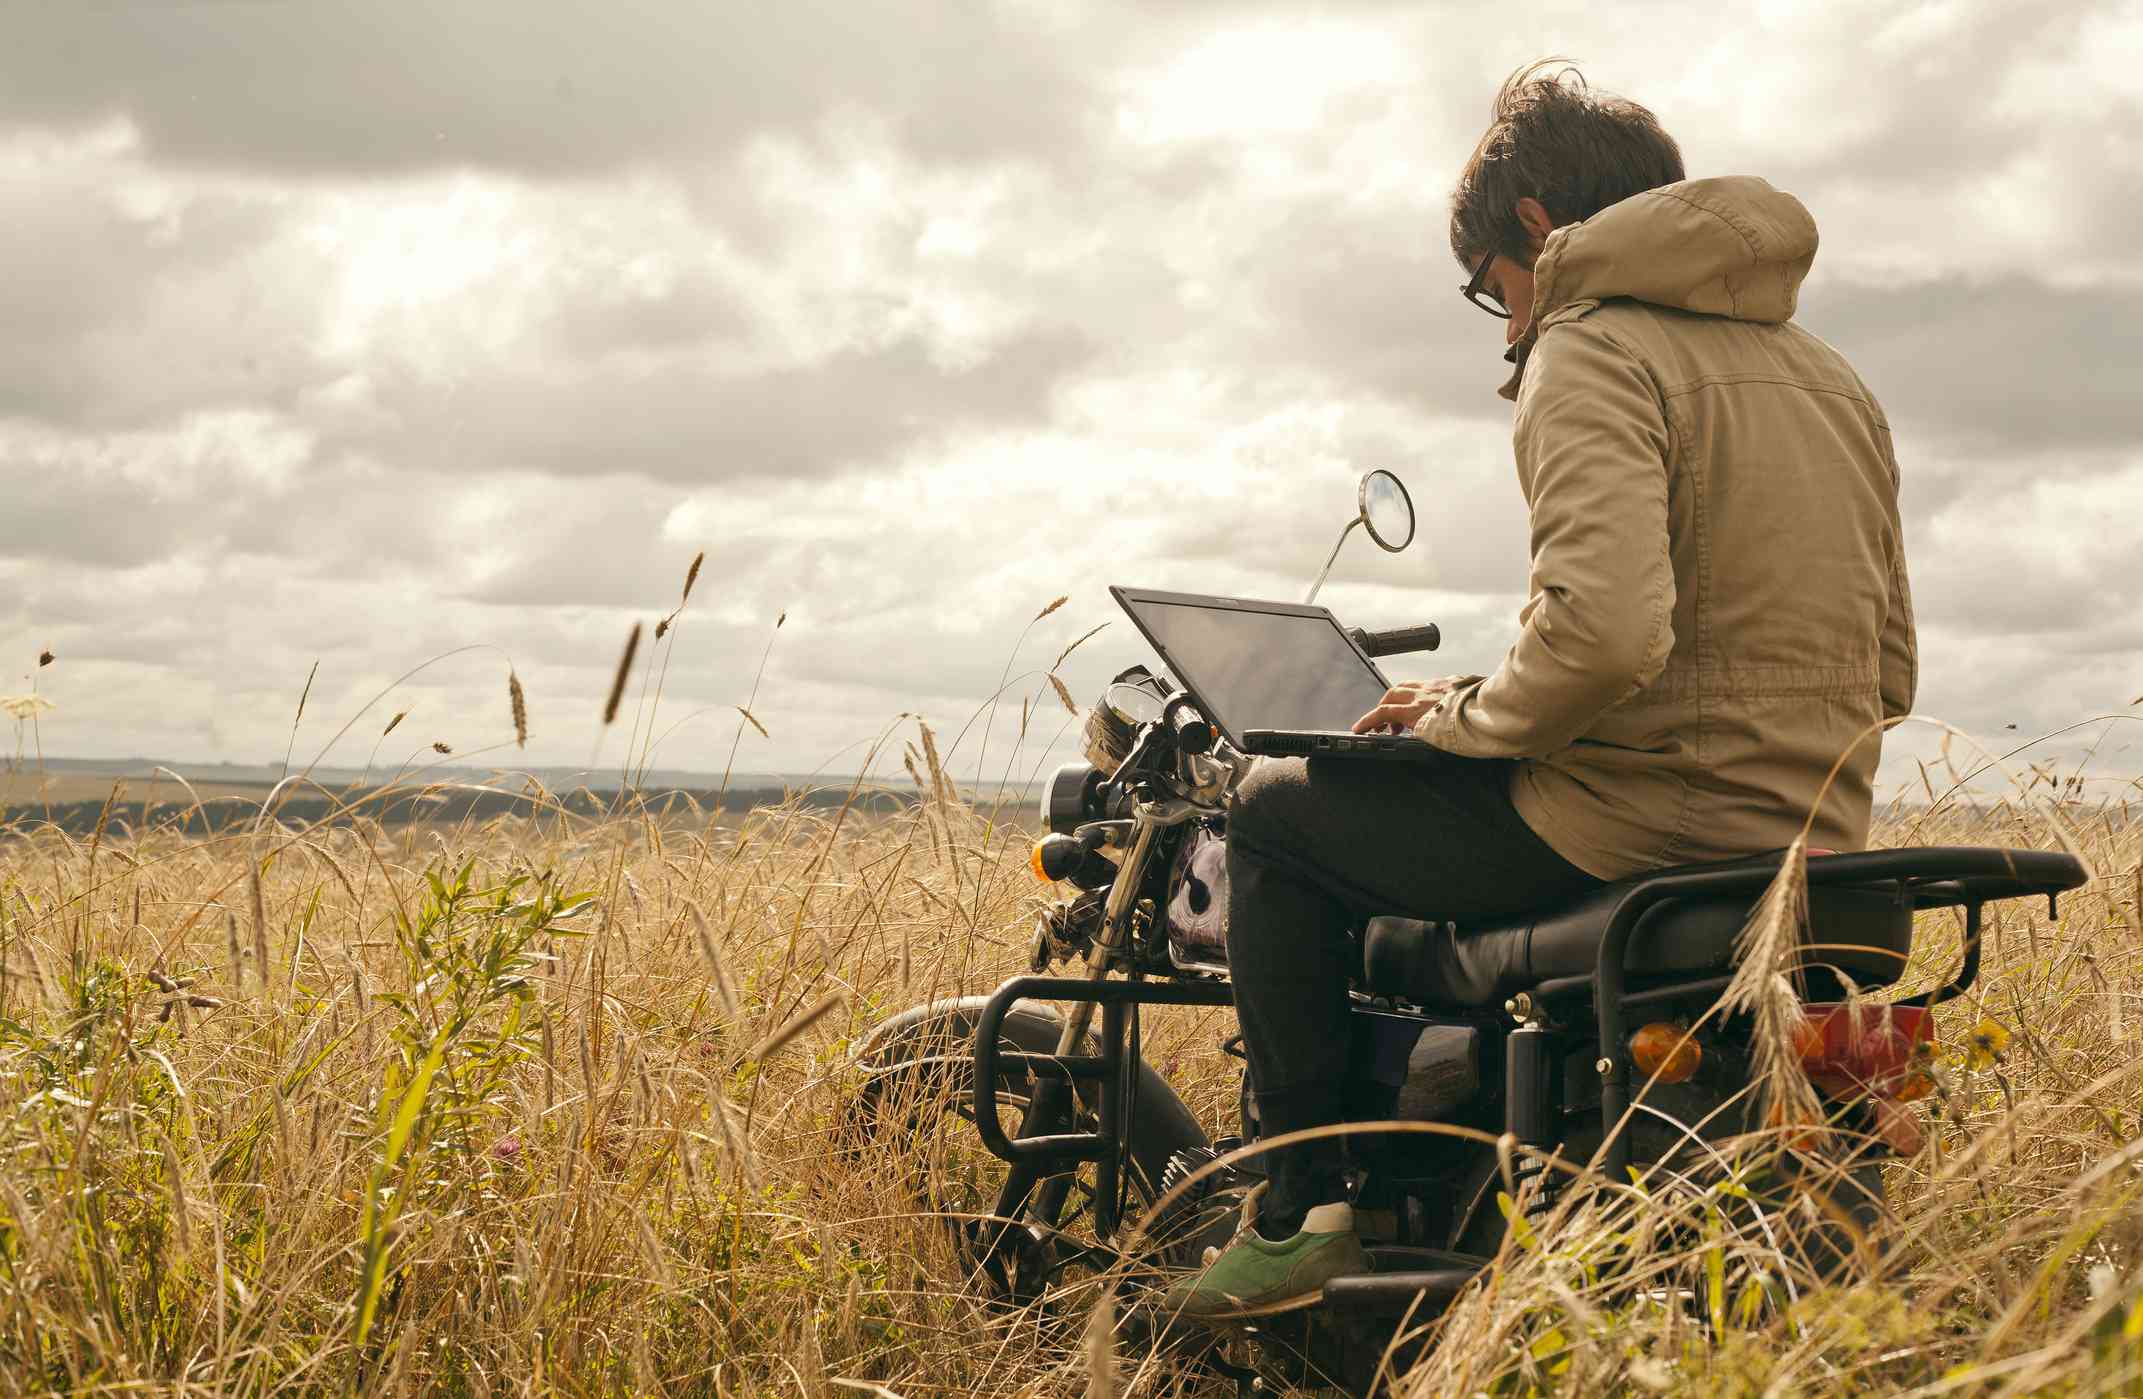 Iemand die een laptop gebruikt terwijl hij op een motor zit in het midden van een landelijk veld.